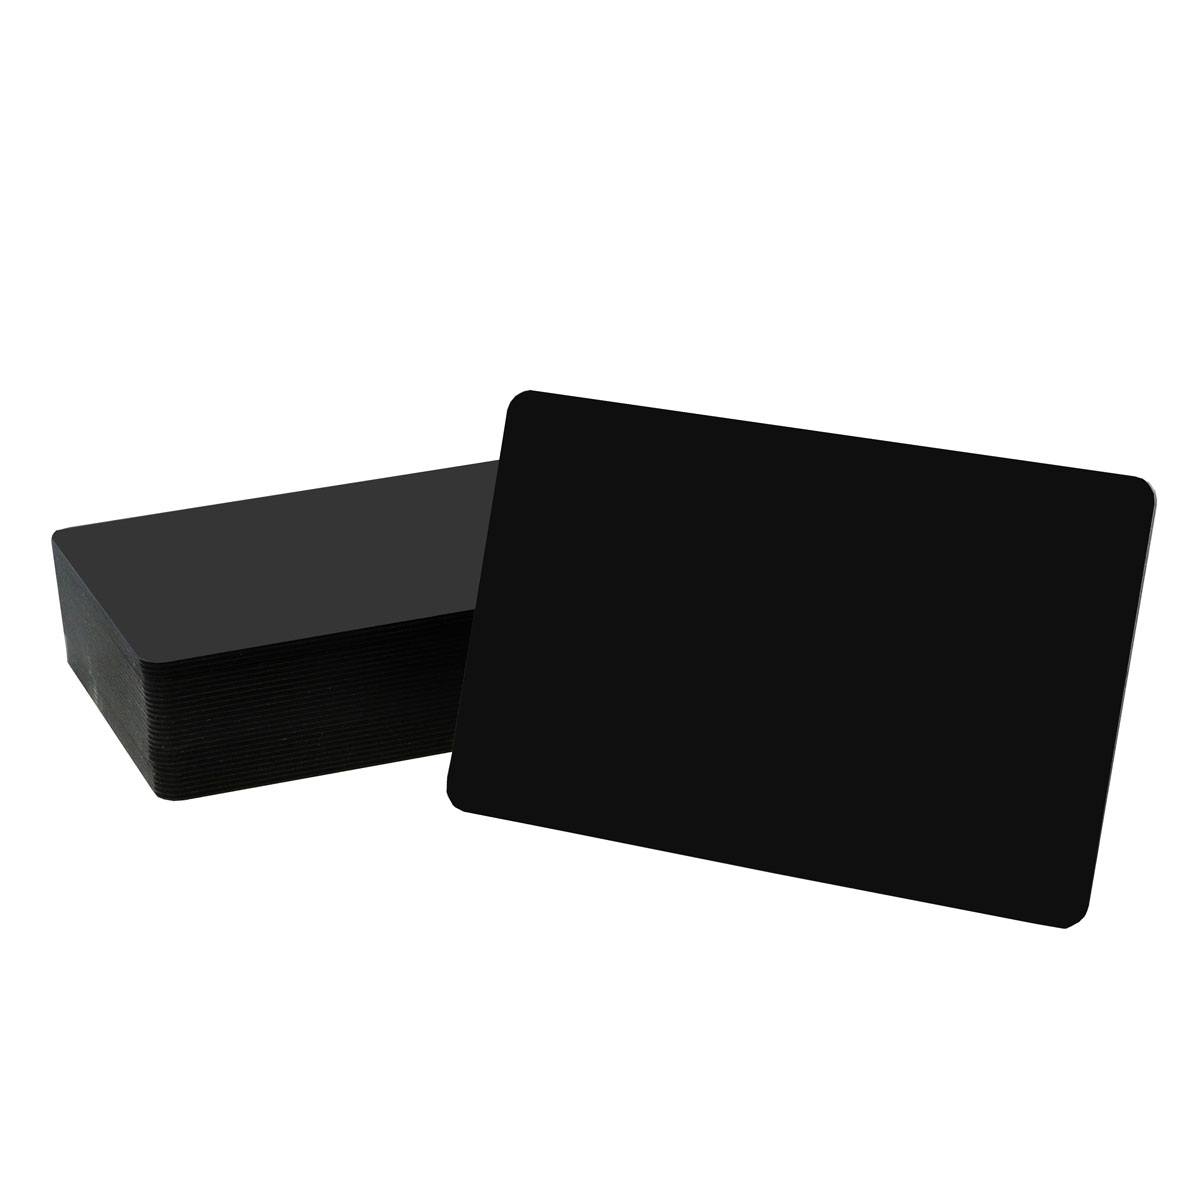 Preisschildkarten schwarz, matt/matt, 0.5mm